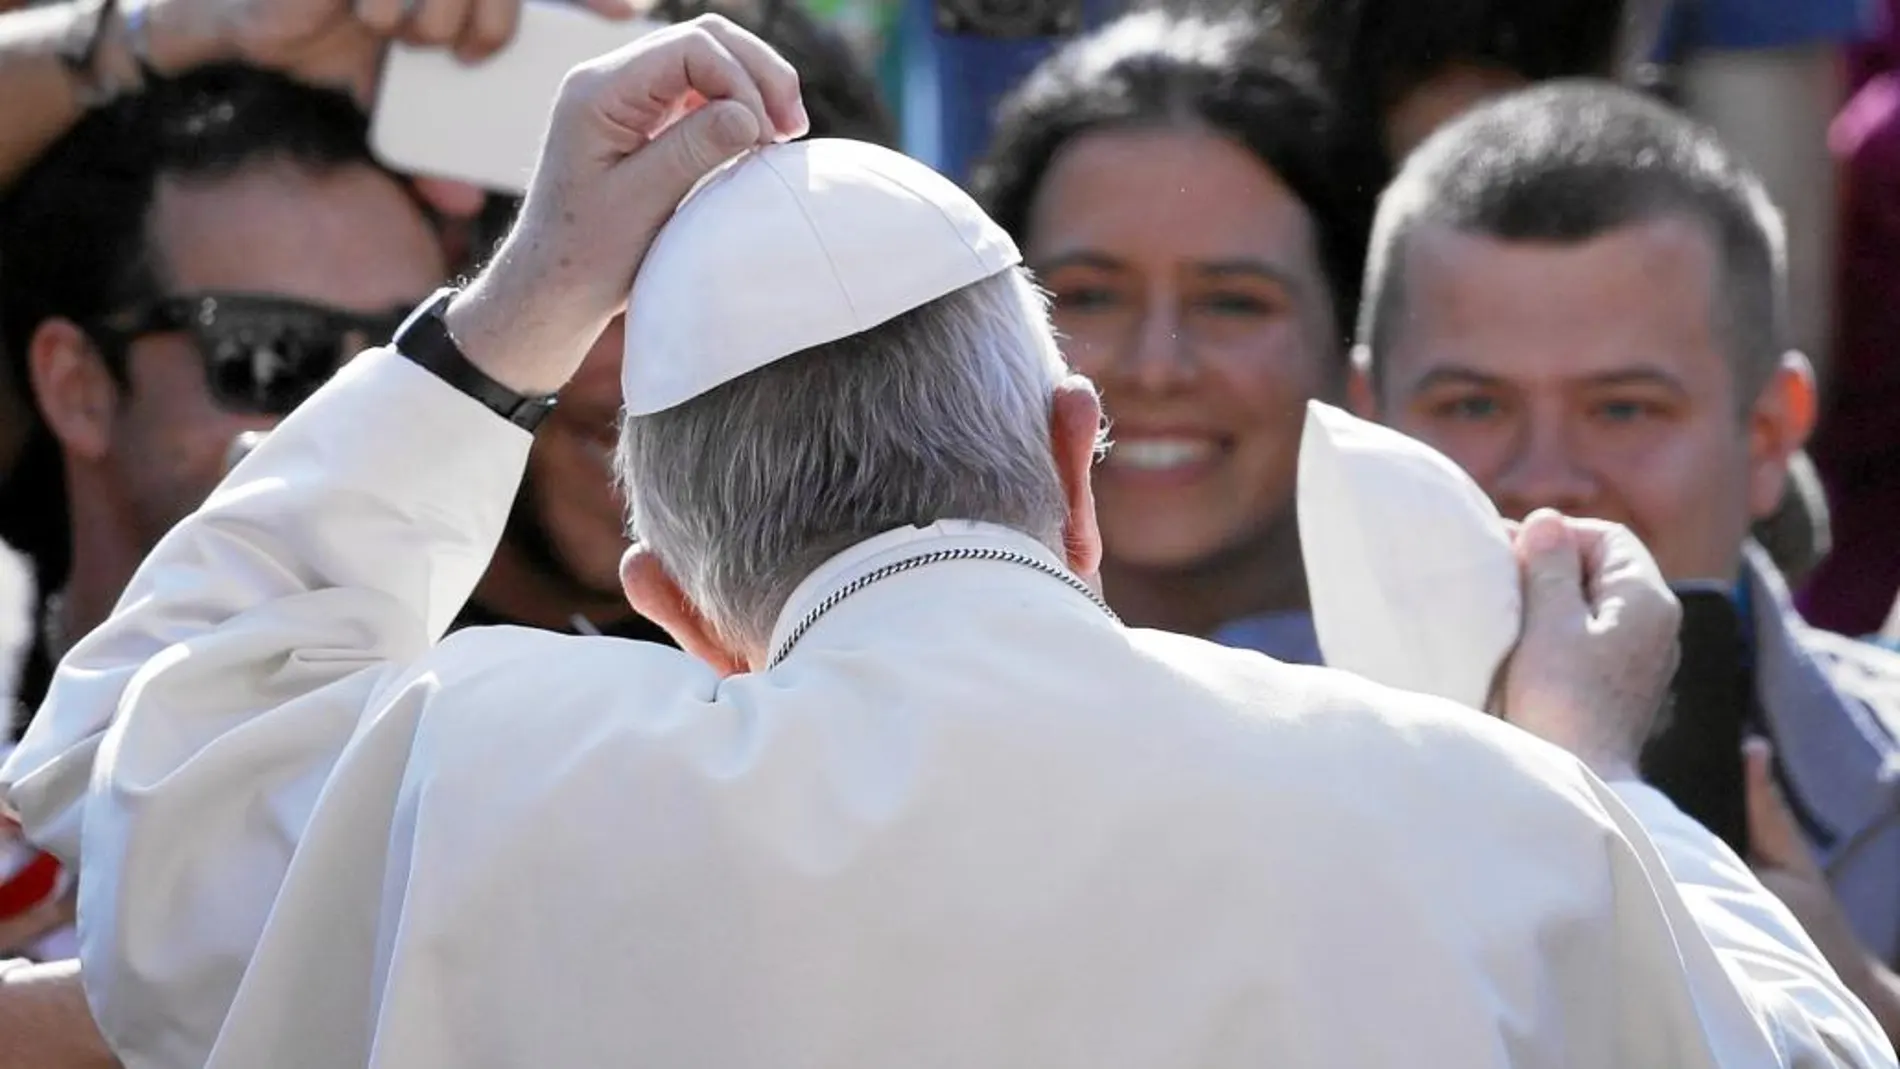 Intercambio de solideos. El Papa intercambia su solideo con uno de los miles fieles que asistieron ayer a San Pedro a escuchar su alocución del Miércoles Santo